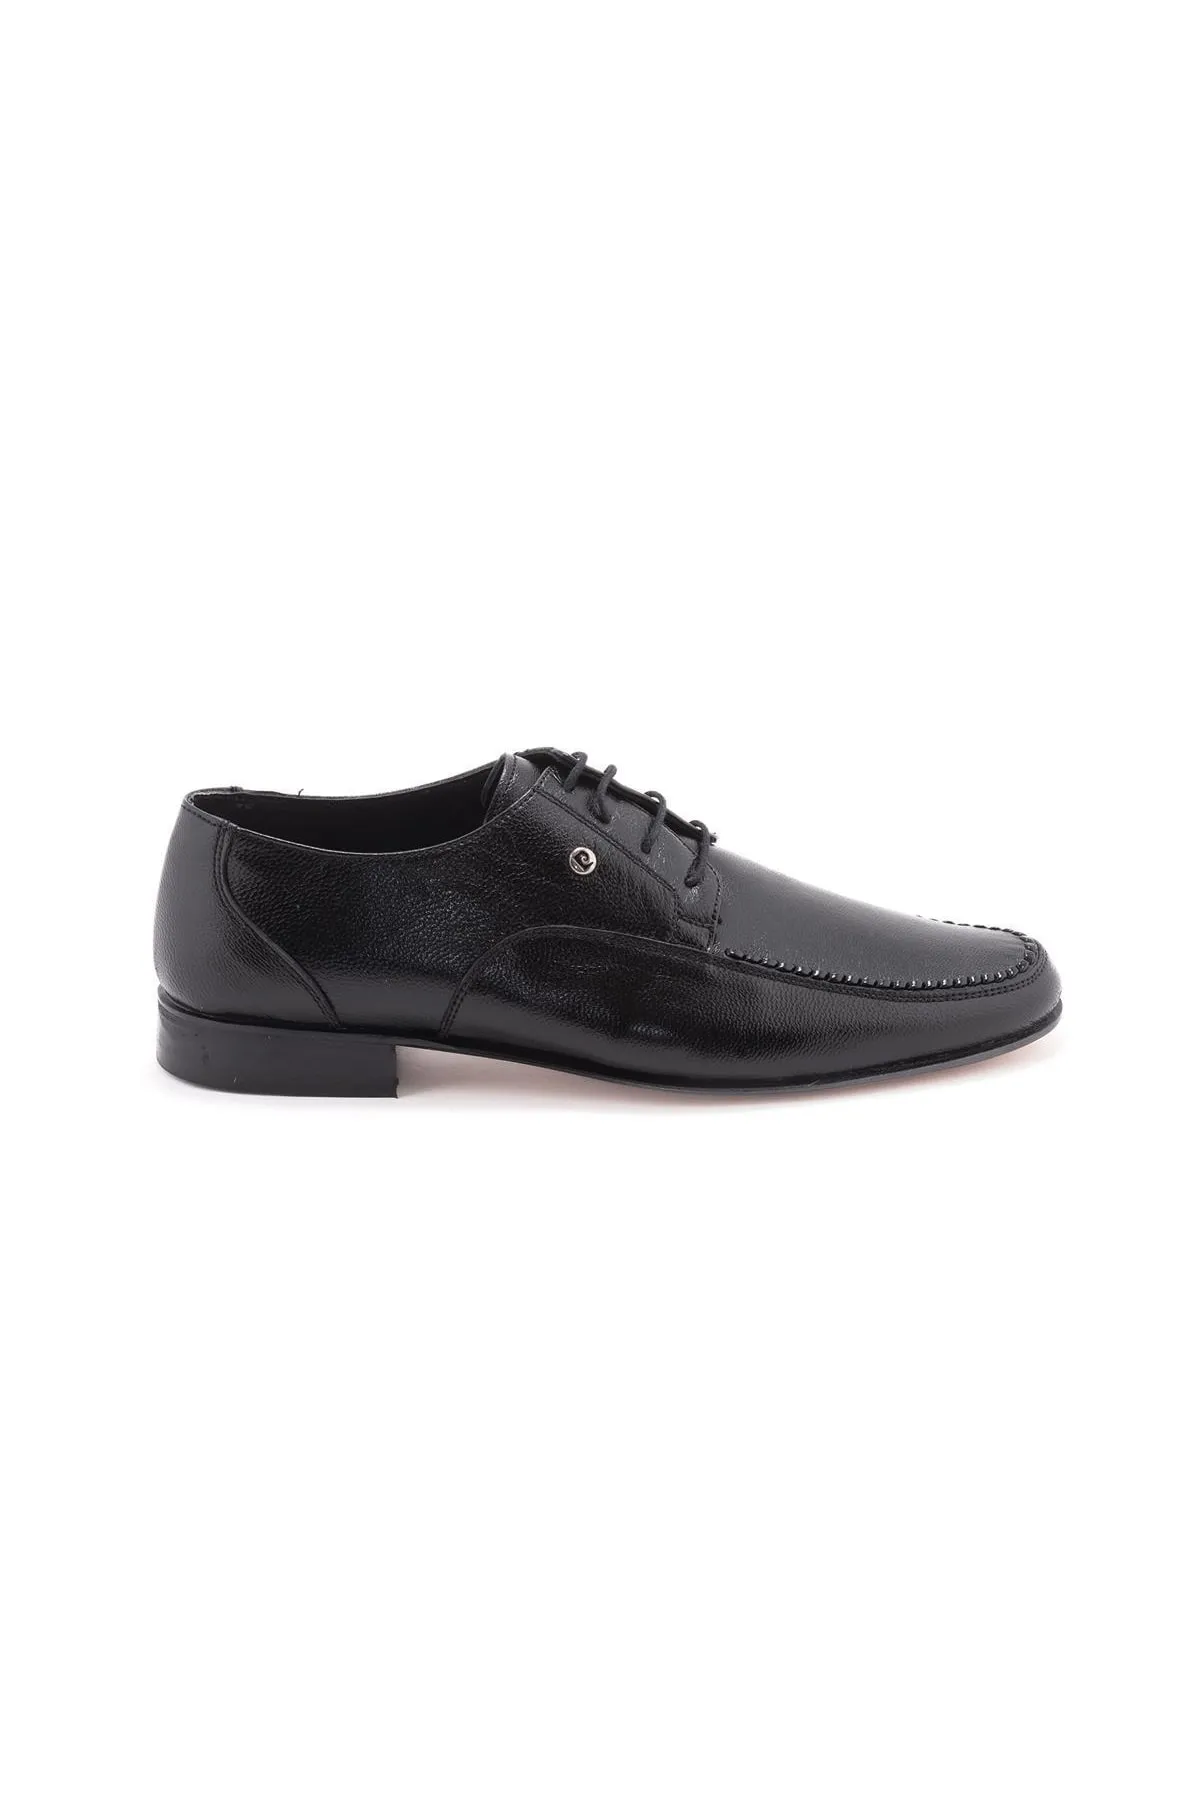 PİERRE CARDİN - Erkek Klasik Ayakkabı-36106-Siyah